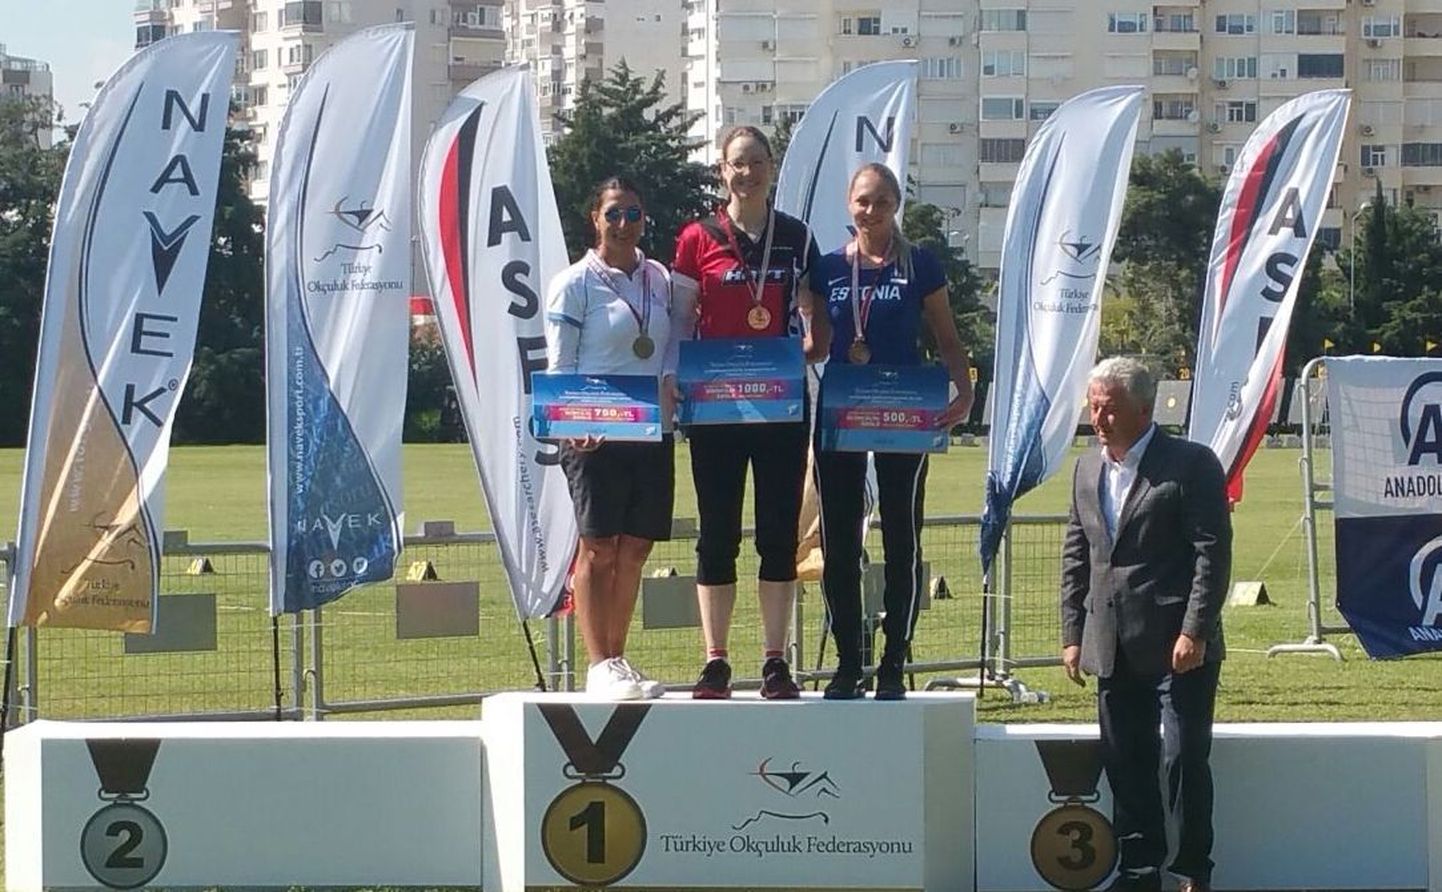 Vibulaskja Reena Pärnat võitis nädalavahetusel Türgis Antalyas rahvusvahelisel turniiril K. Bagatir Spring Arrows 110 võistleja hulgas kolmanda koha.